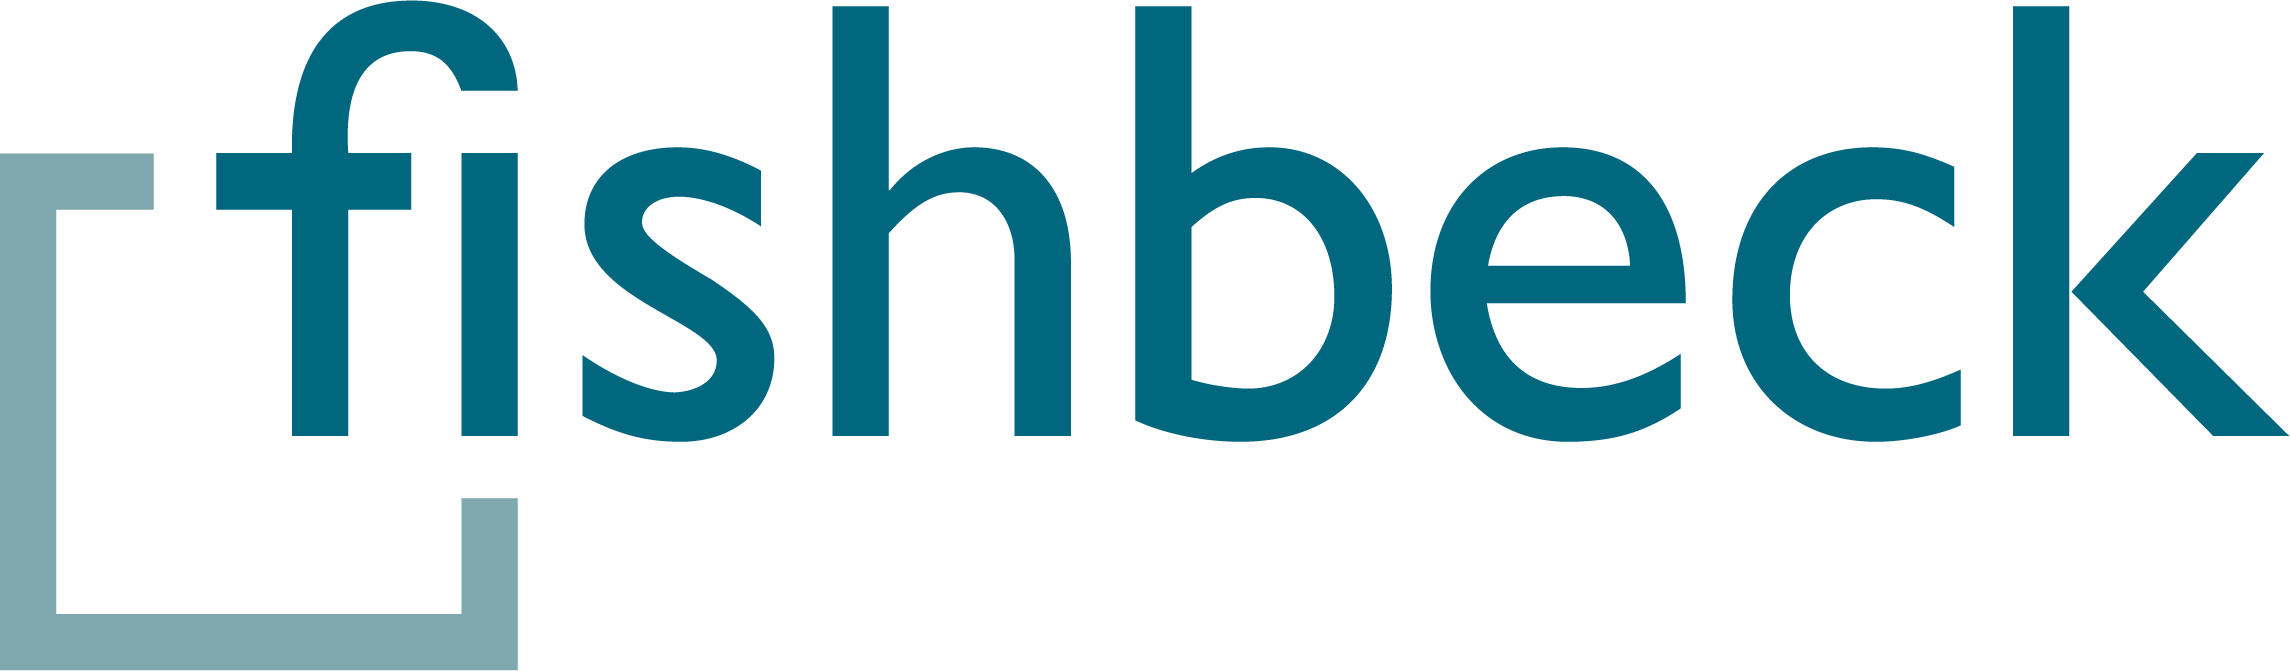 Fishbeck-Color-Logo.png